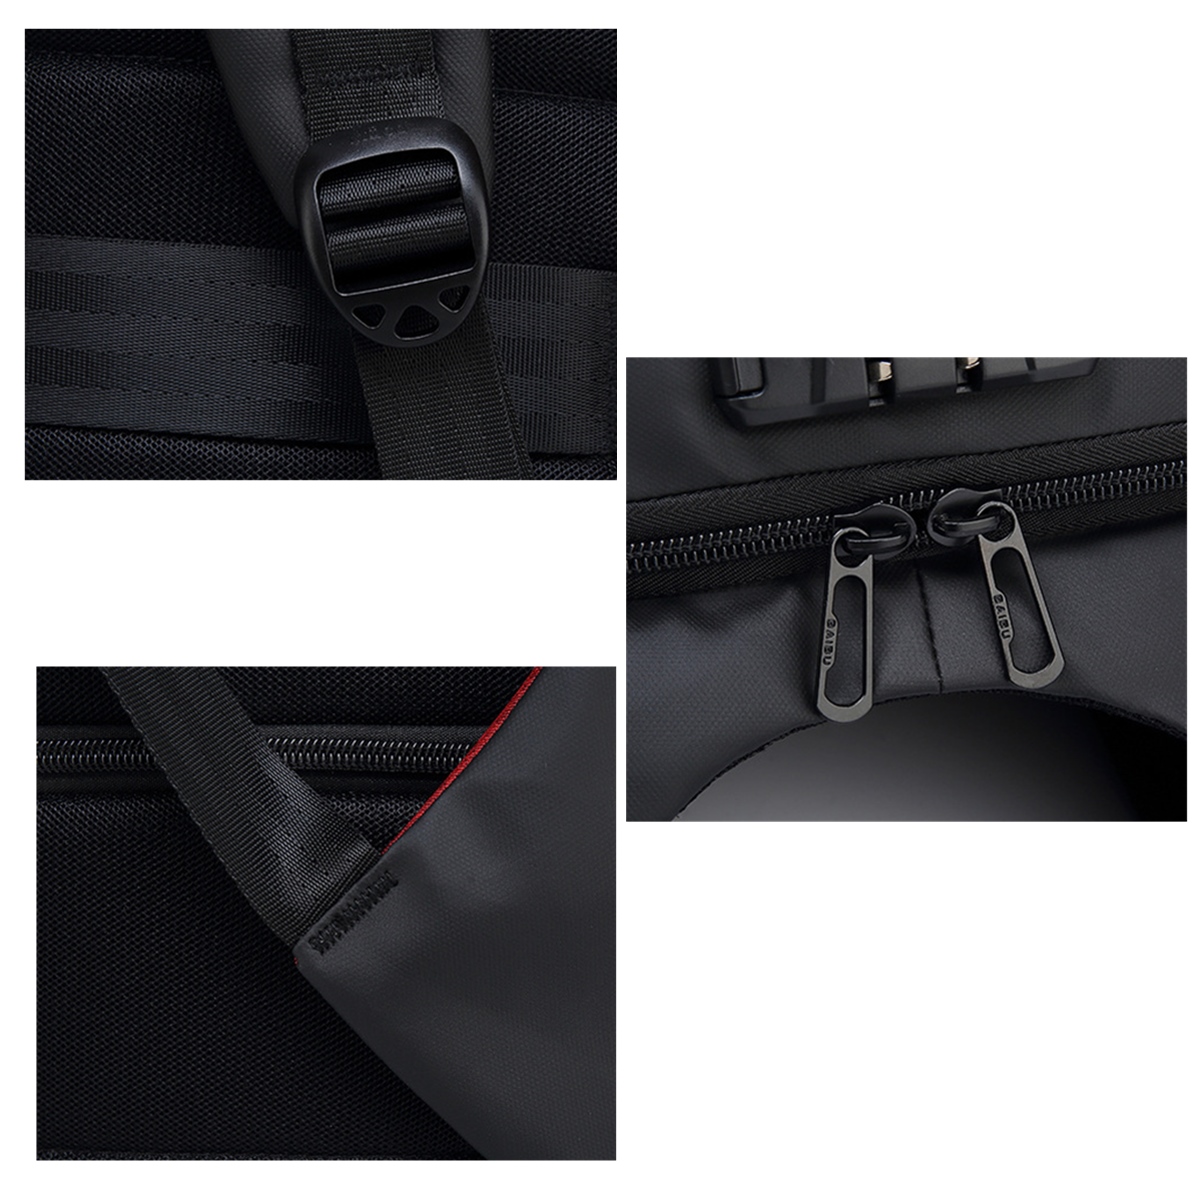 156-Inch-Laptop-Backpack-Bag-Travel-Bag-Student-Bag-With-External-USB-Charging-Port-1288885-8